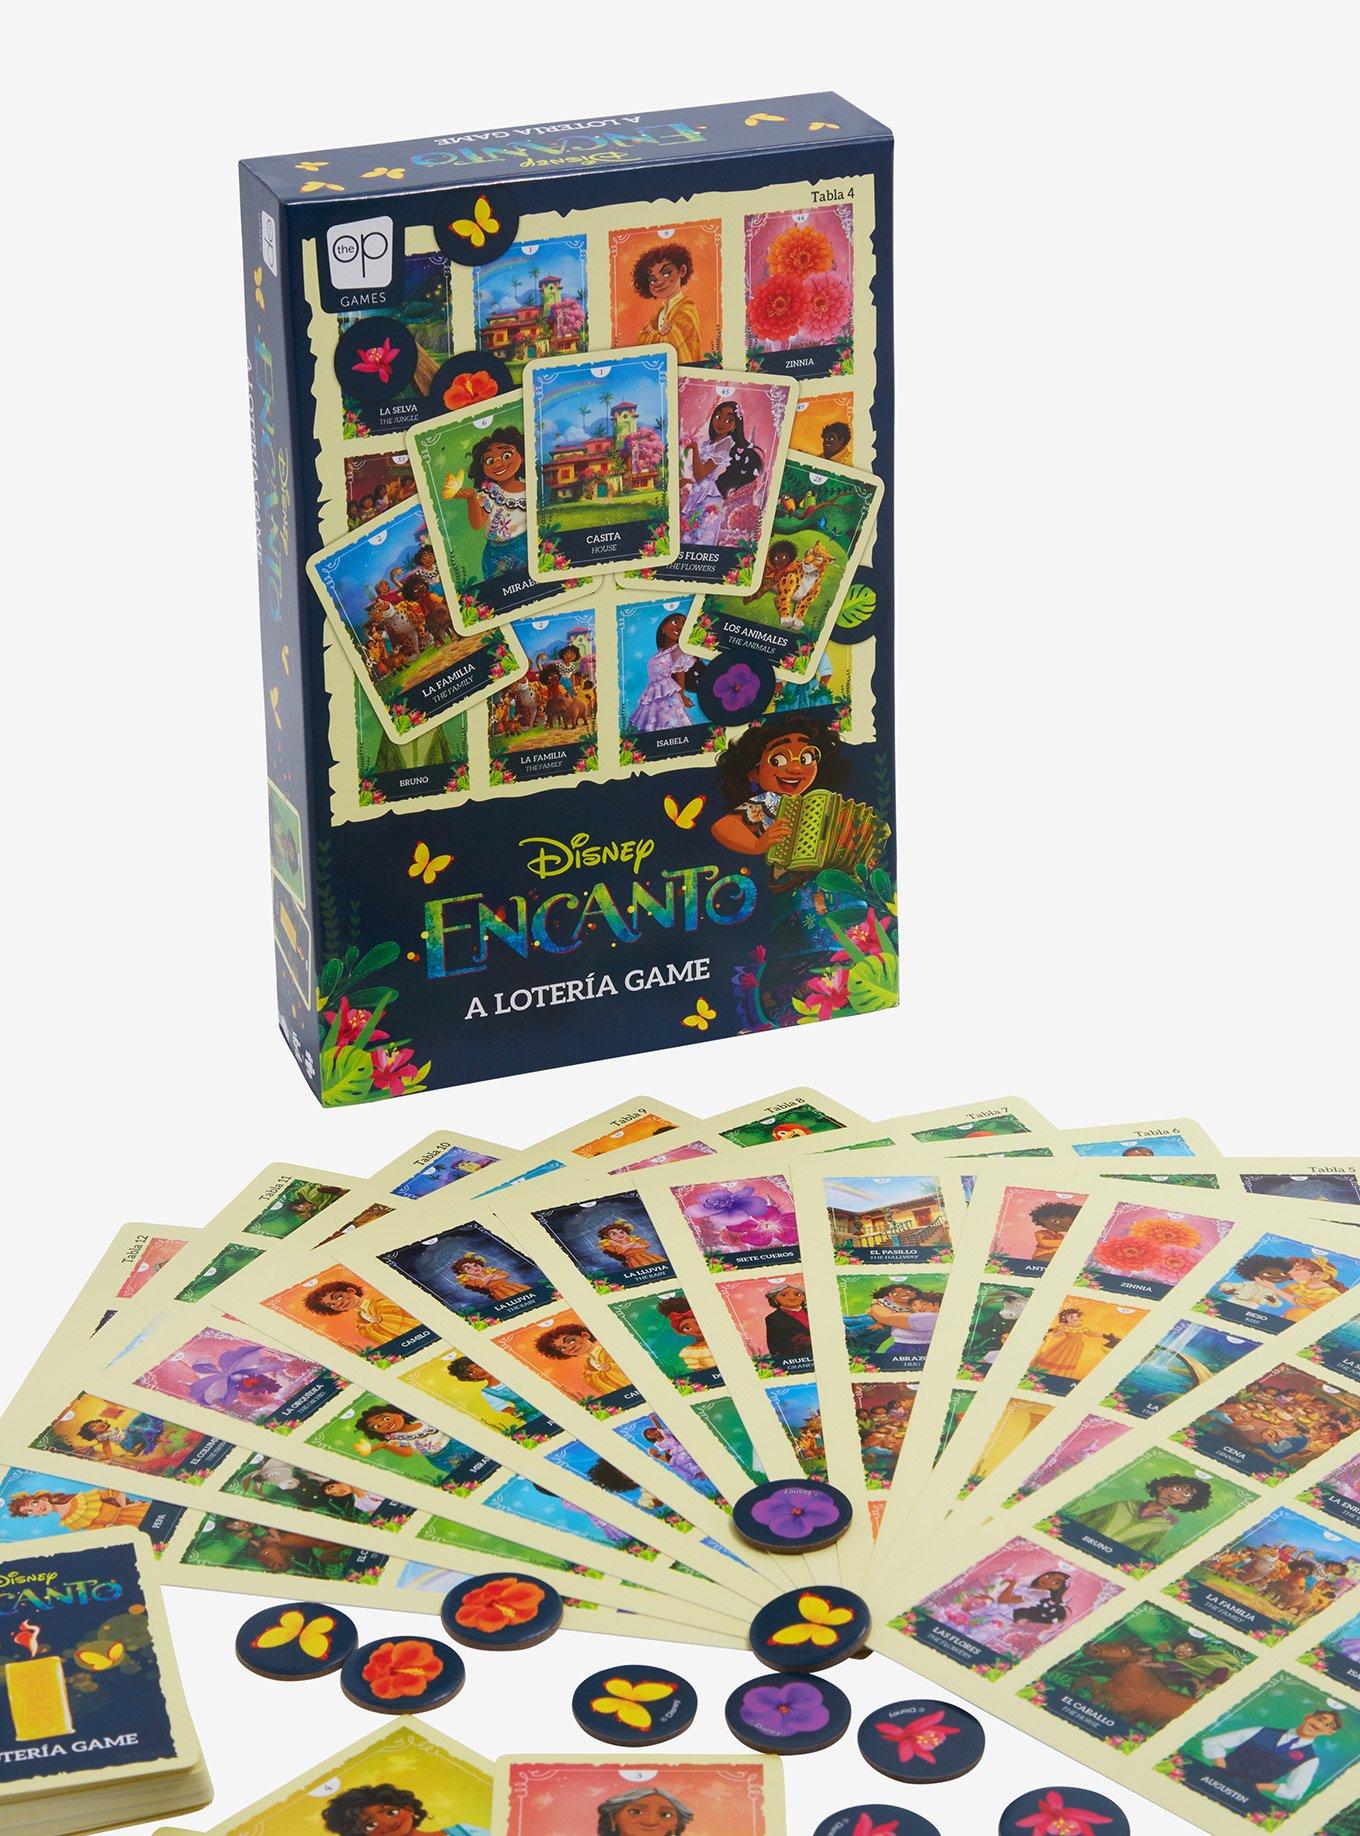 Disney Encanto: A Lotería Game - BoxLunch Exclusive